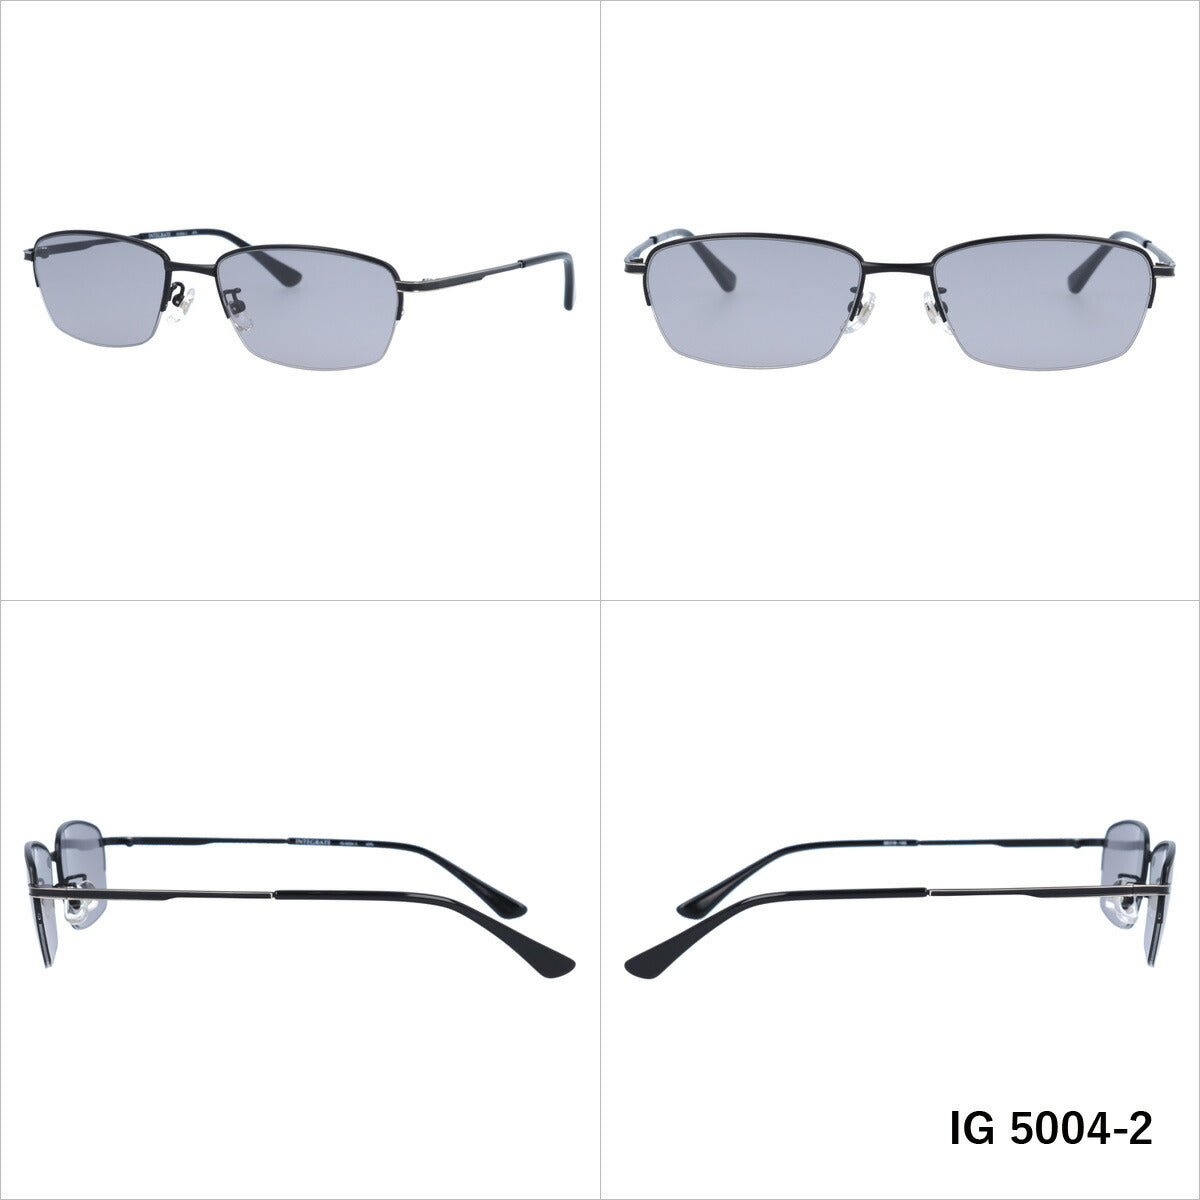 おしゃれ サングラス INTEGRATE インテグレート IG 5004 全3色 56サイズ アジアンフィット スクエア型 メンズ レディース UVカット 紫外線 対策 ブランド 眼鏡 メガネ アイウェア 人気 おすすめ ラッピング無料